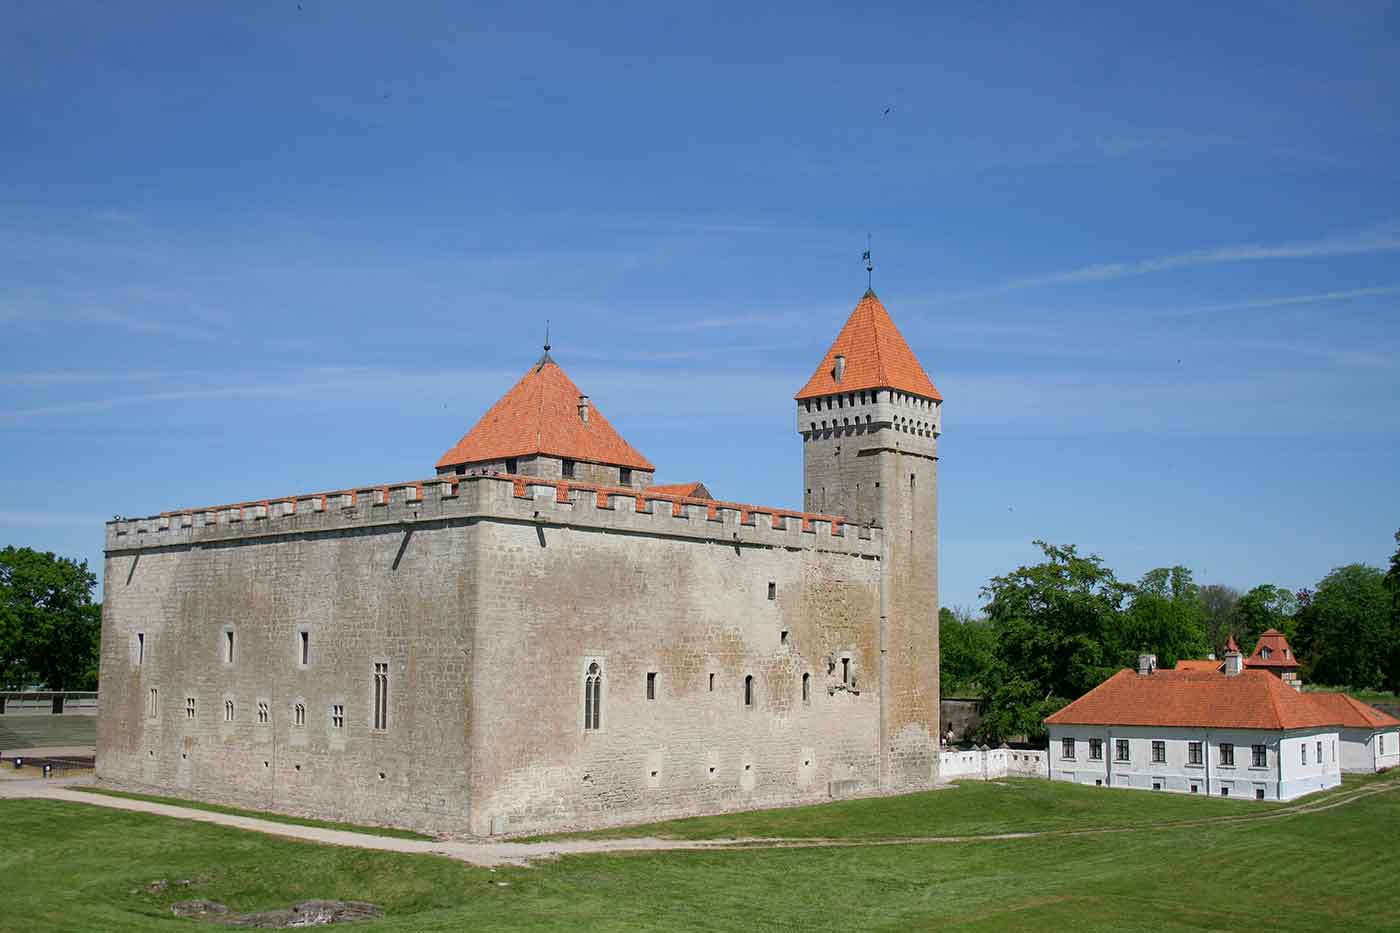 Kuressare Castle